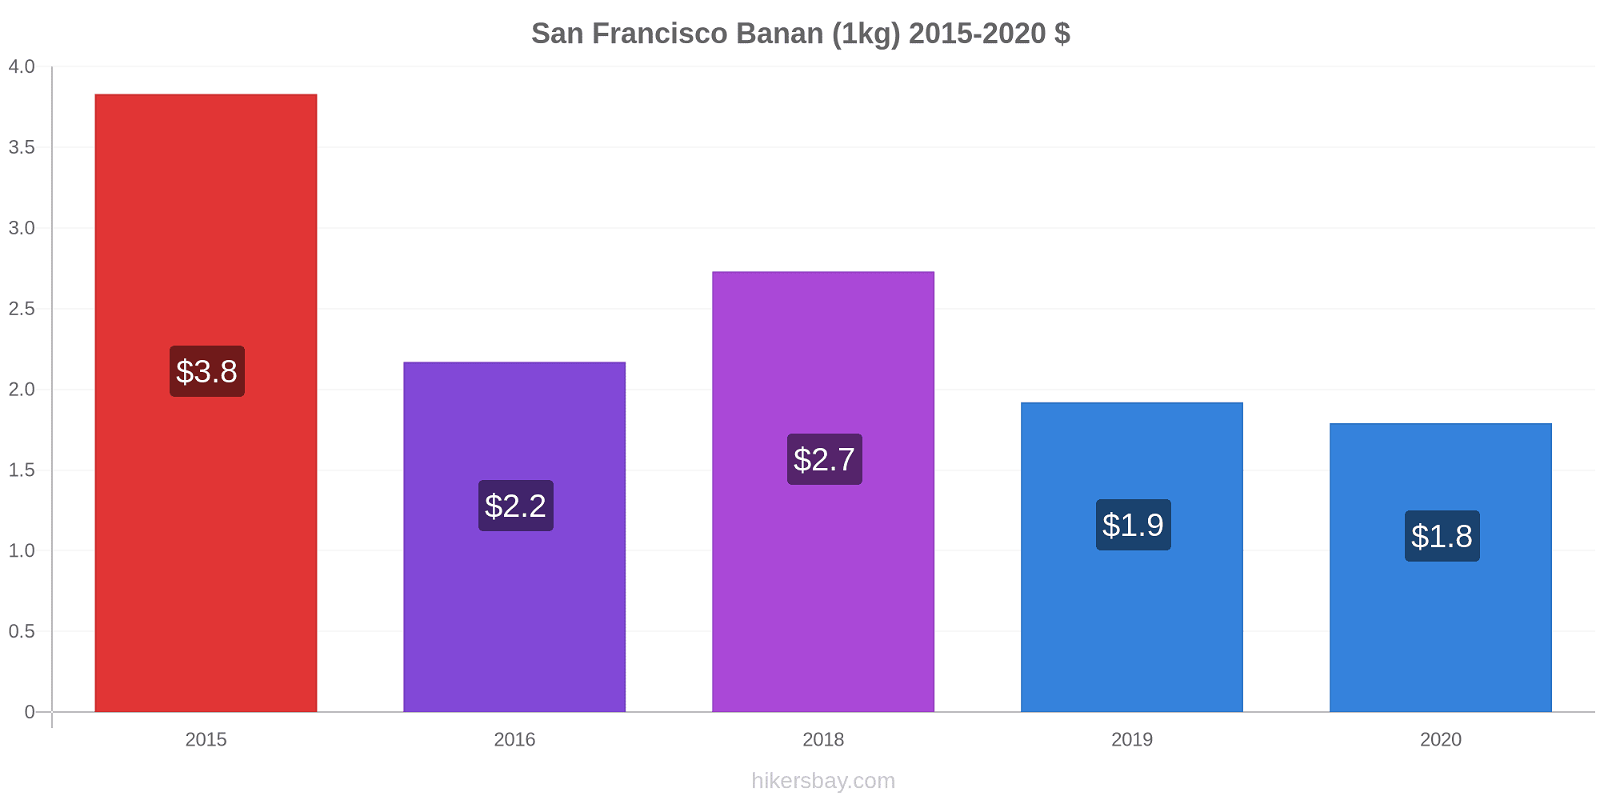 San Francisco prisændringer Banan (1kg) hikersbay.com